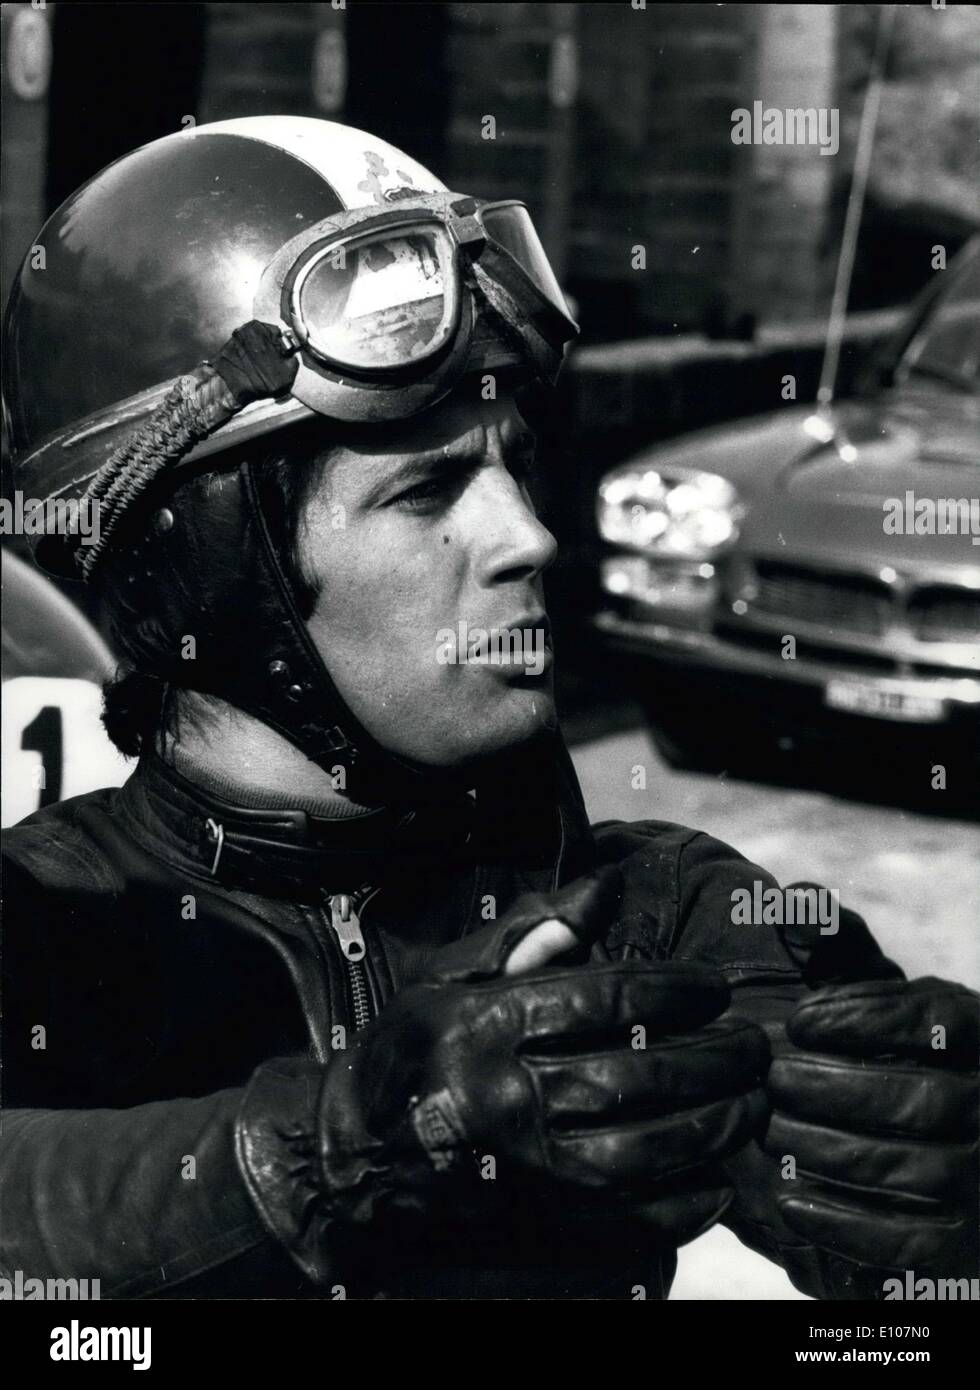 Febbraio 05, 1970 - Il ben noto campione del mondo di ciclismo motore Giacomo Agostini, 27, sta provando a Roma l'autodromo di Vallelunga il nuovo prototipo della 500 cc MV Augusta, la ditta che Agostini rigidi durante l'anno. Foto Stock